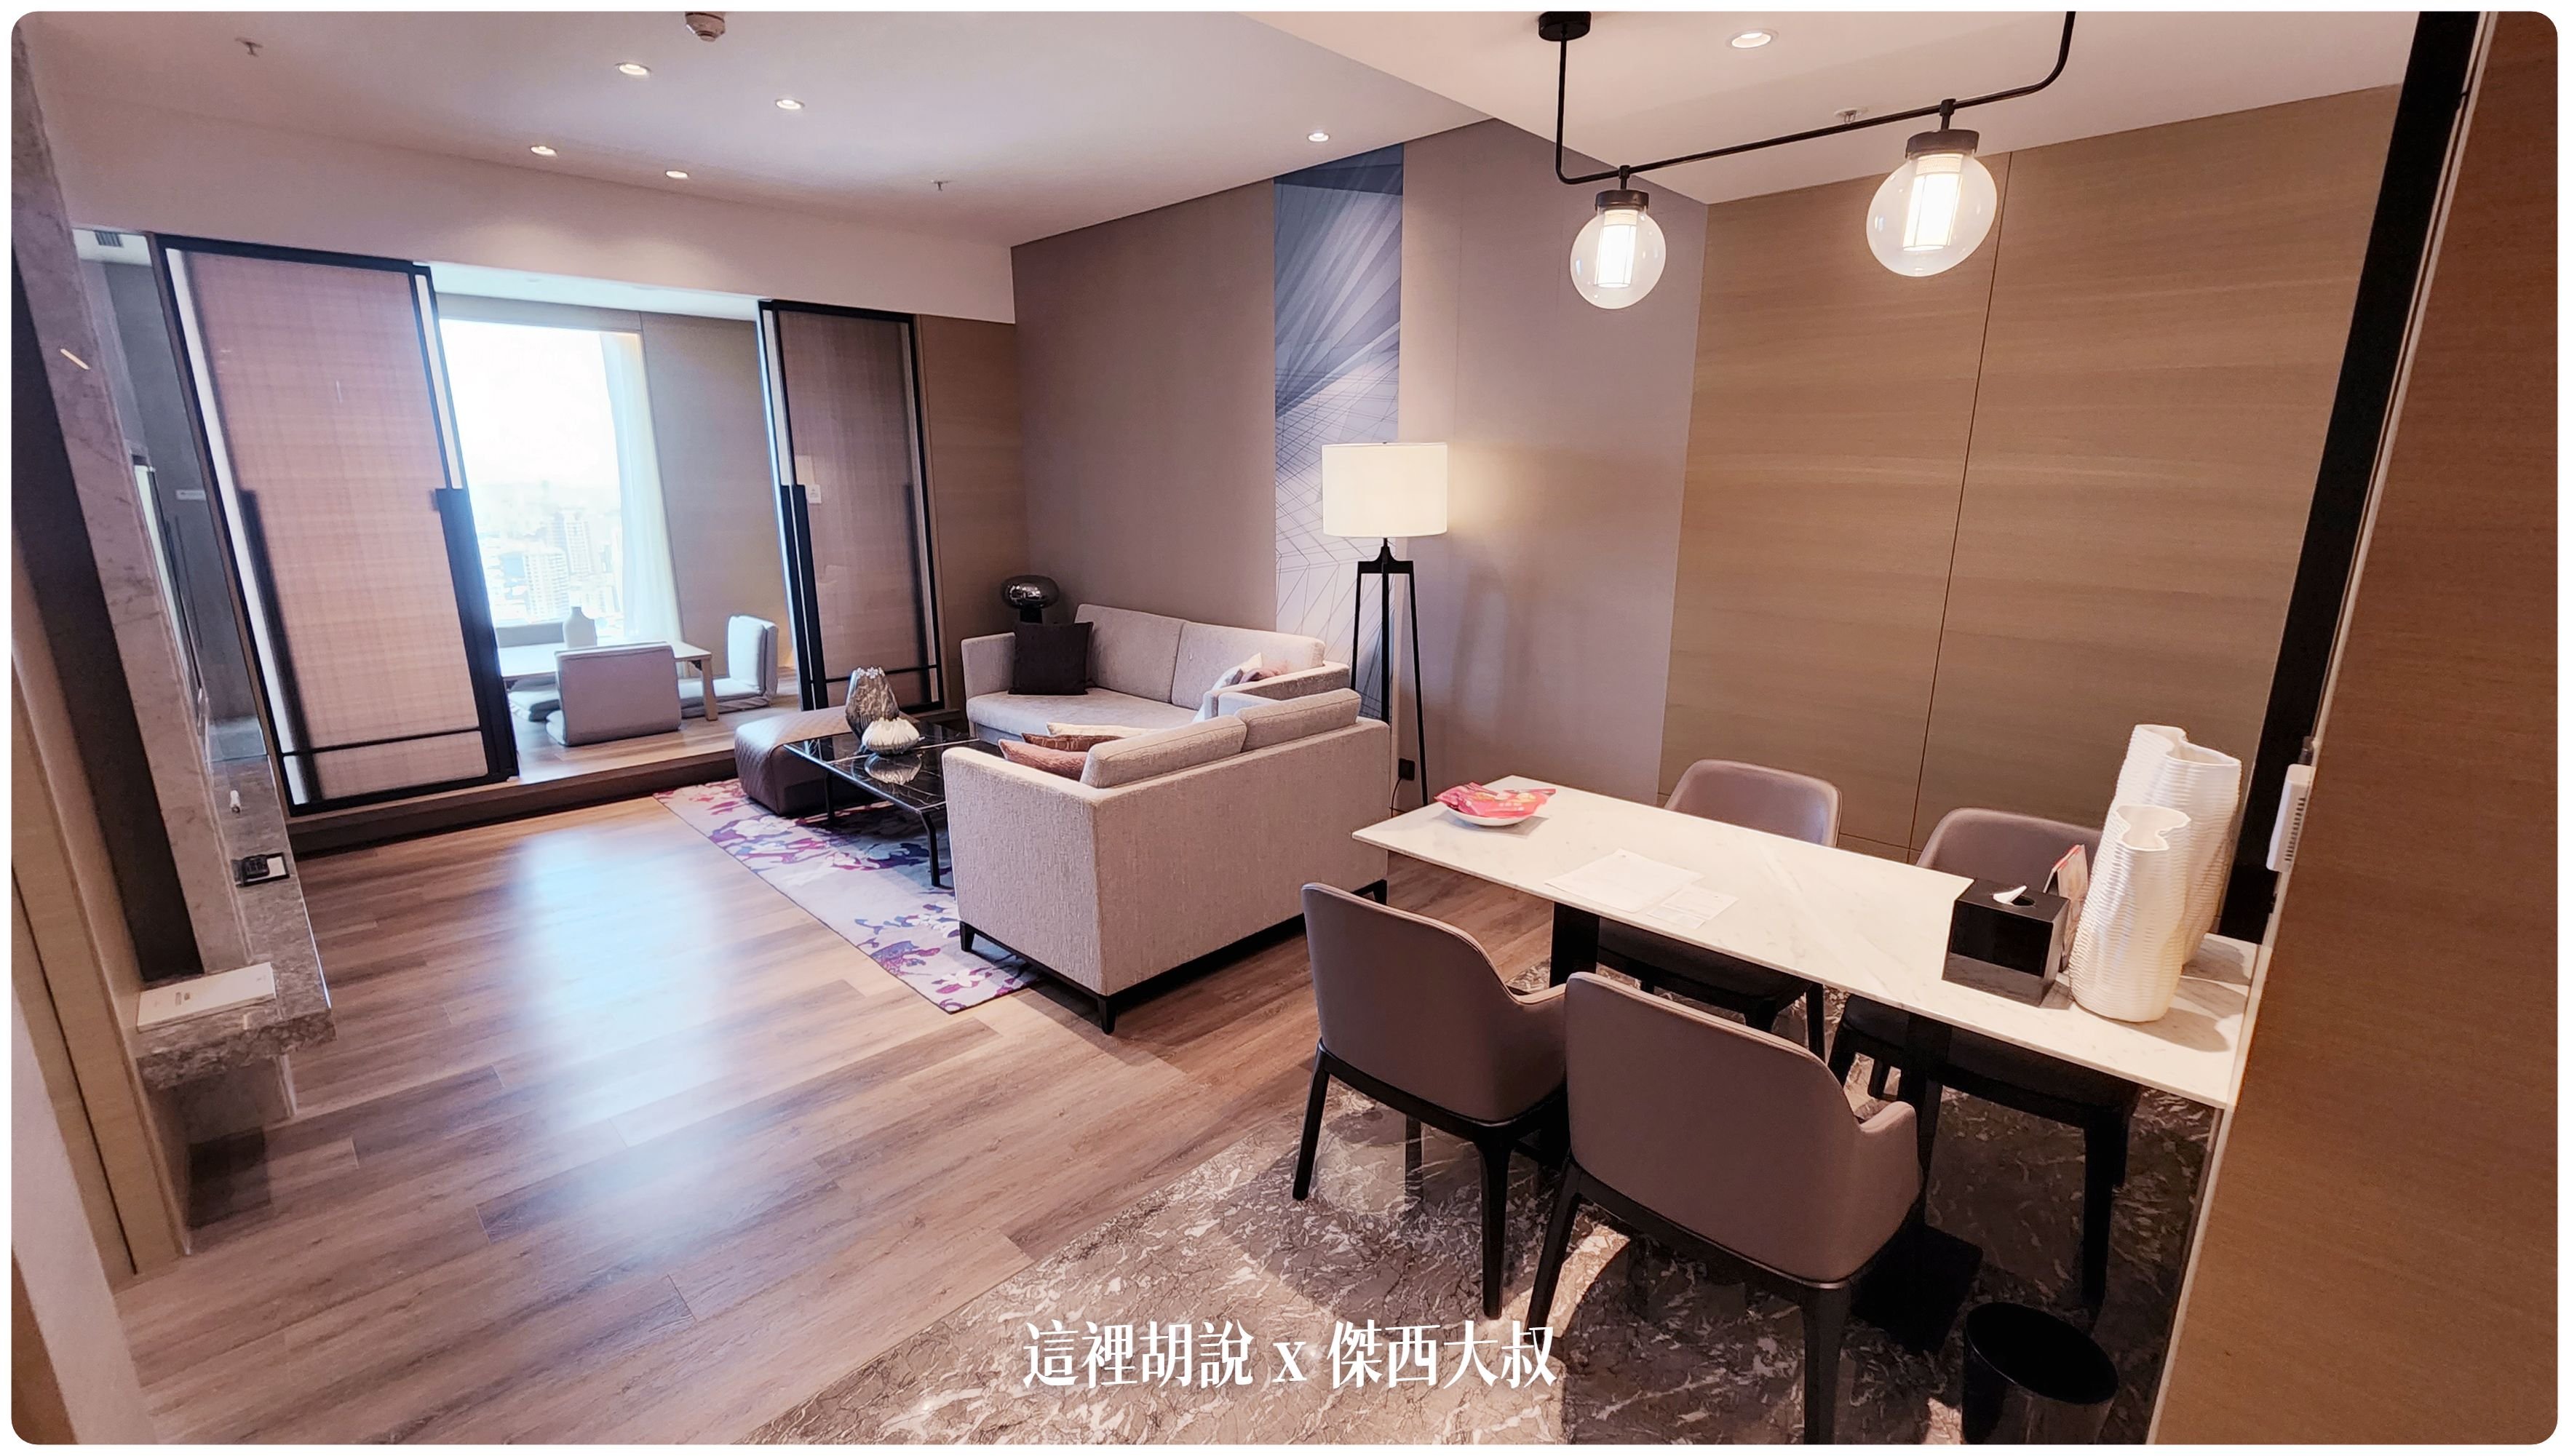 最近文章：高雄萬豪套房 尊榮套房跟萬豪套房照片記錄 Marriott Kaohsiung